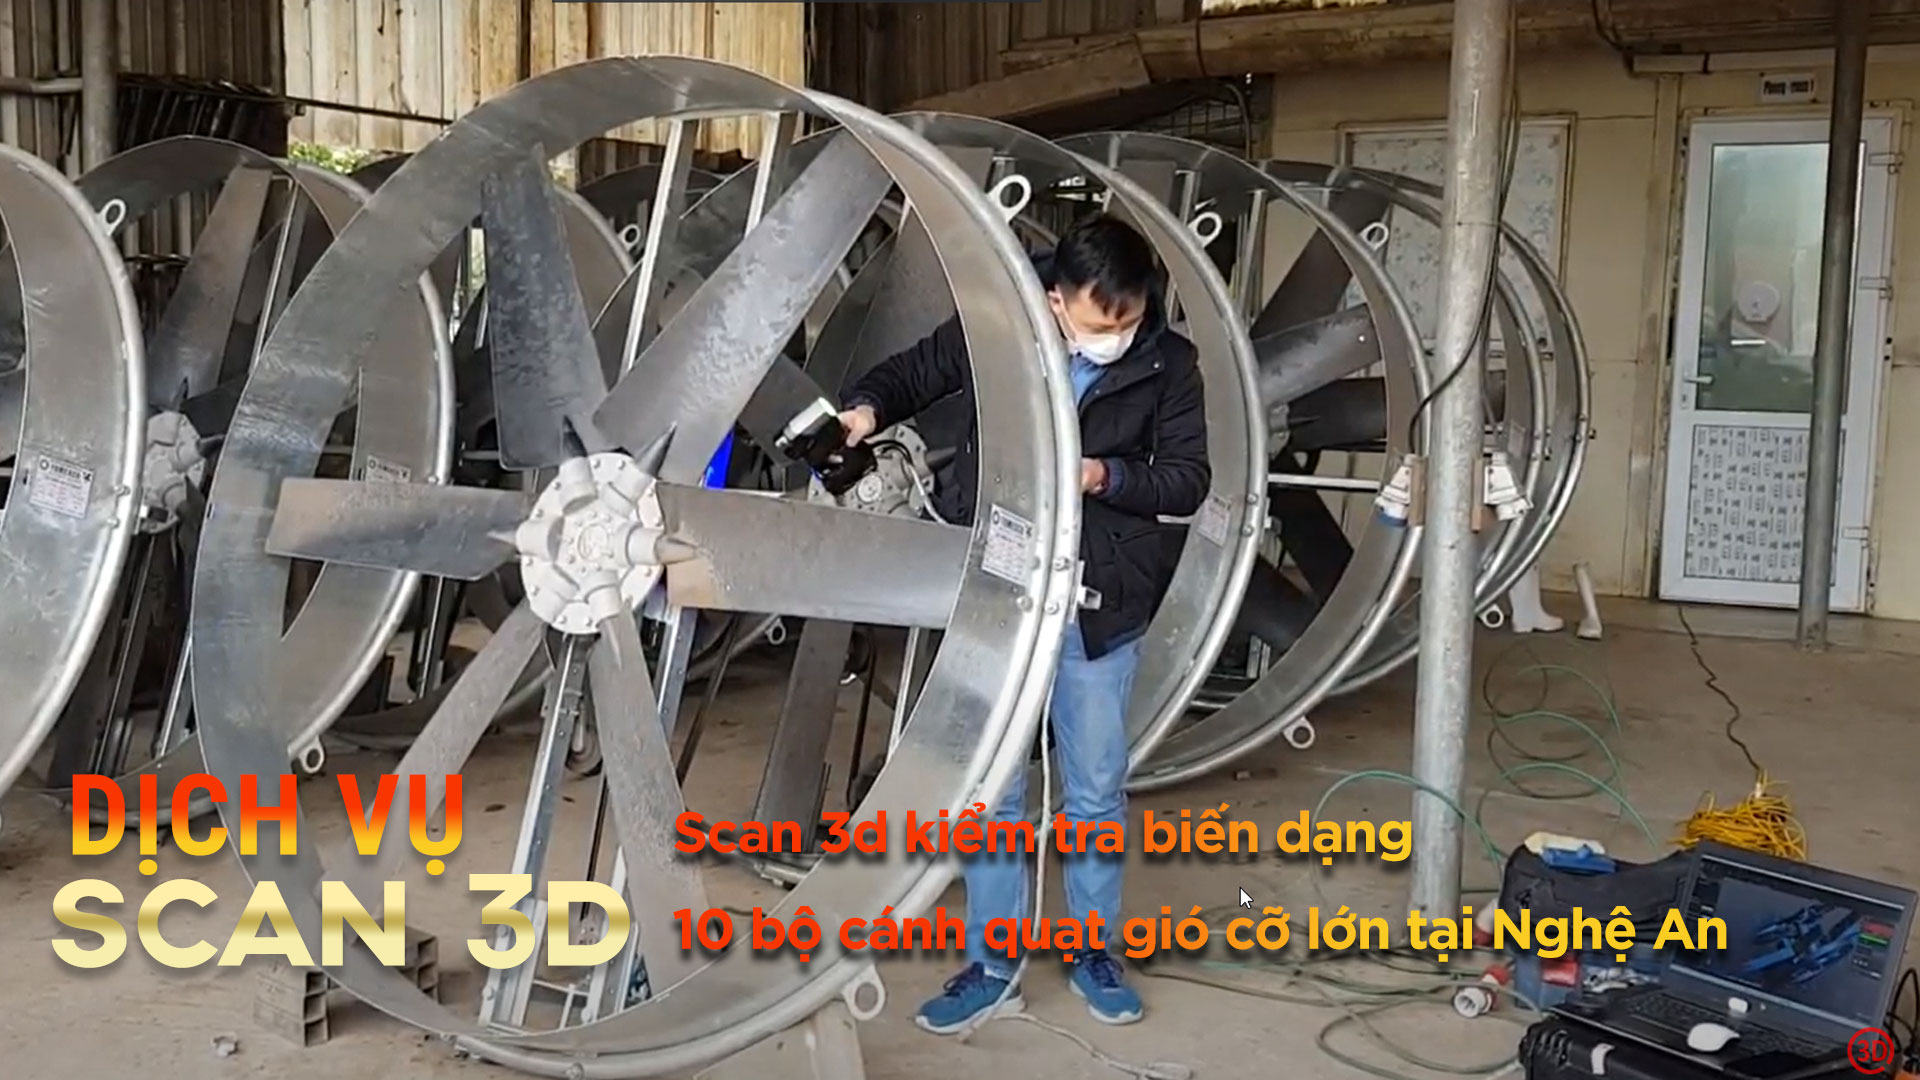 Dịch vụ scan 3d kiểm tra biến dạng 10 bộ cánh quạt gió cỡ lớn tại Nghệ An